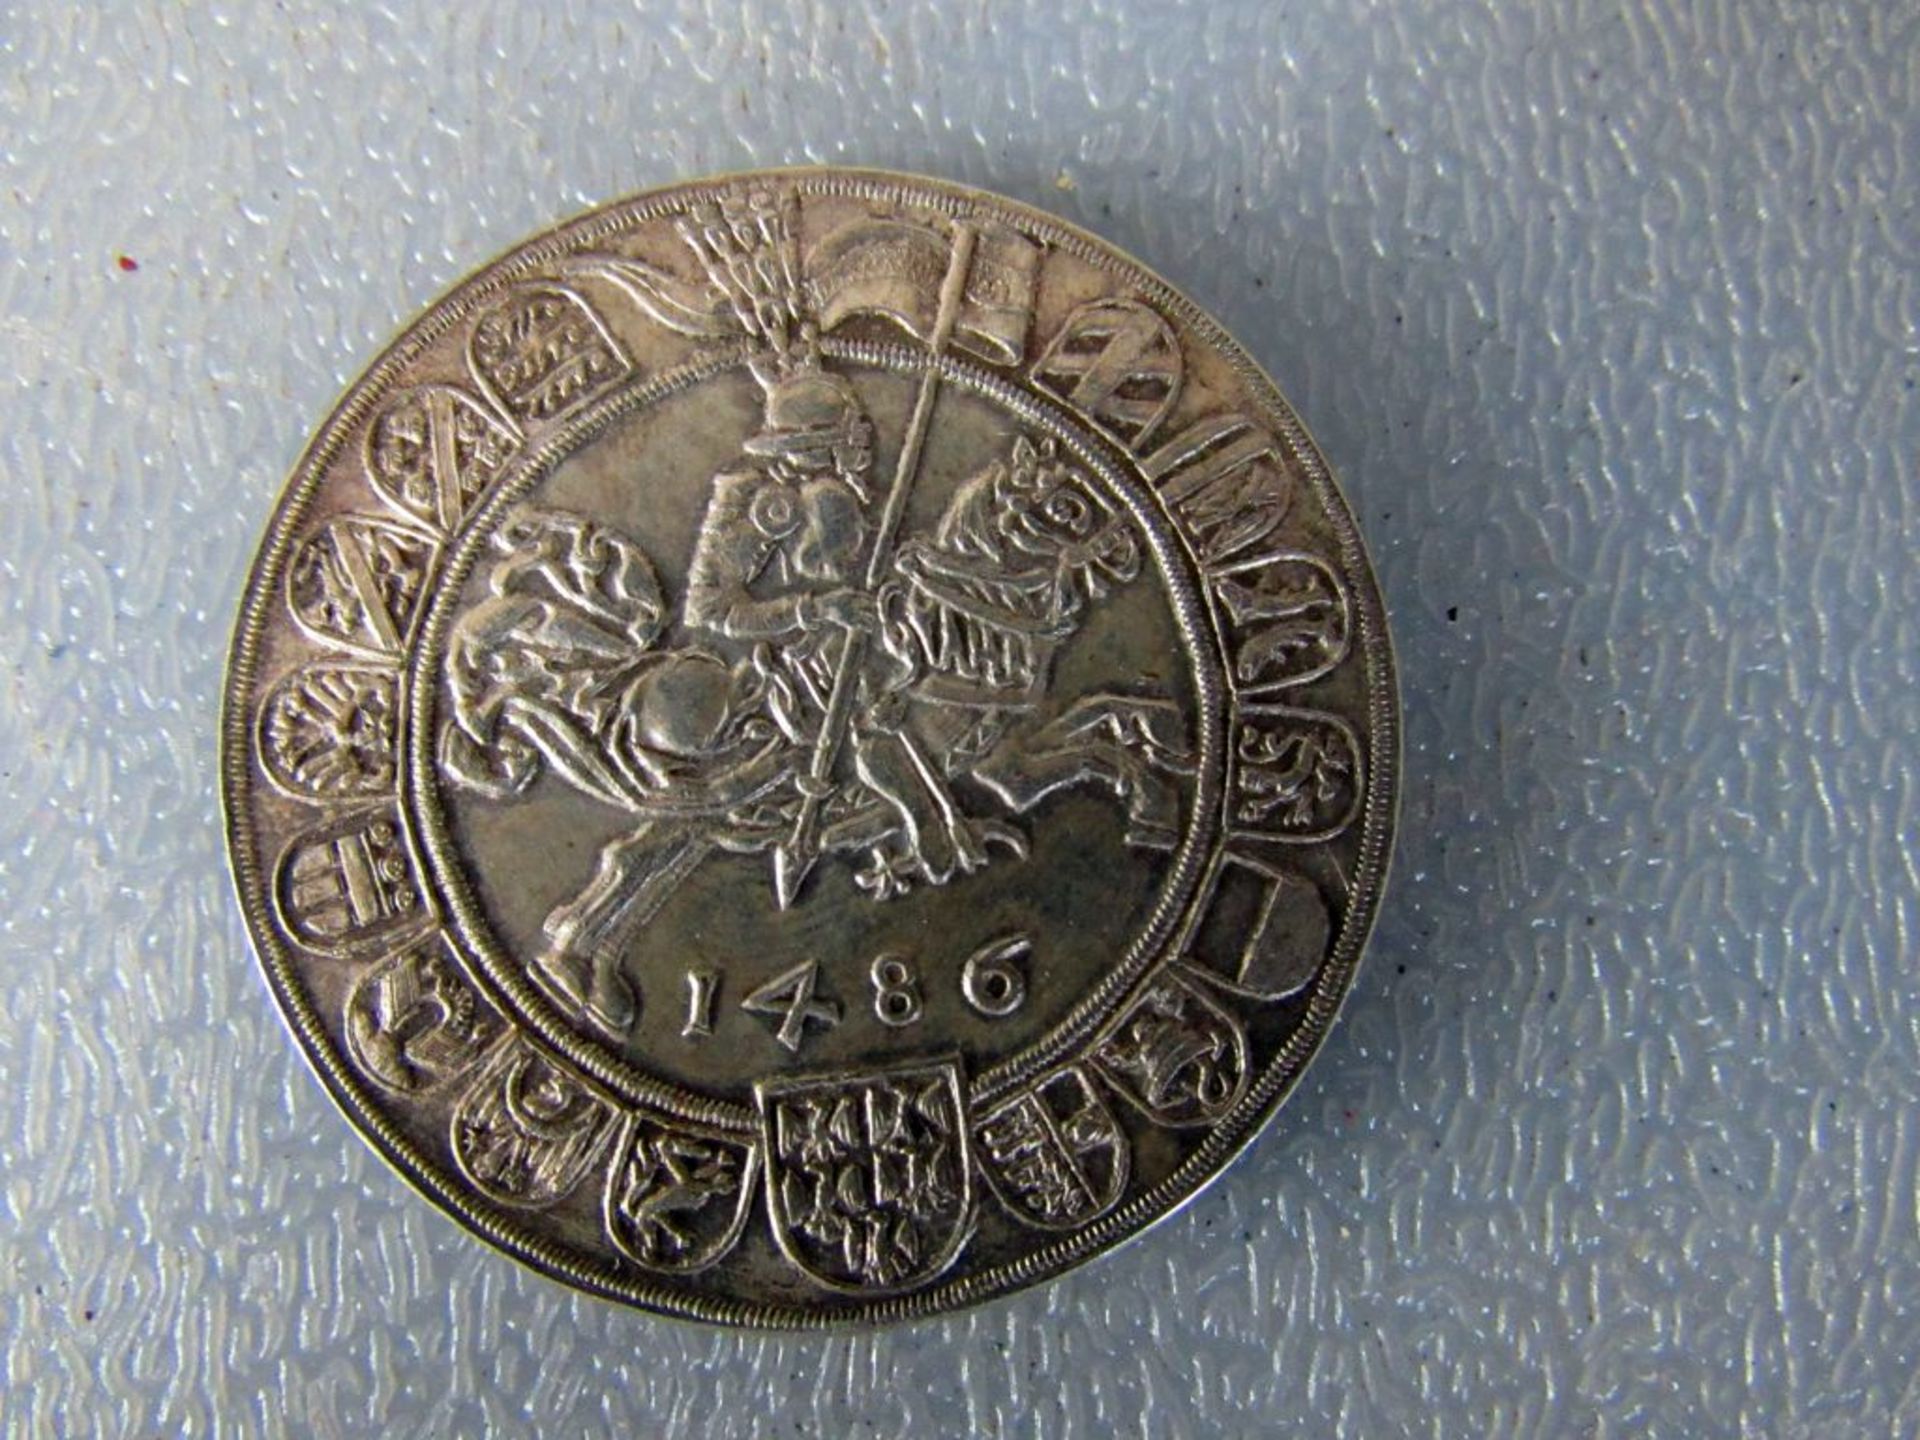 Alte Silbermünze 1468 Nachdruck - Image 3 of 3